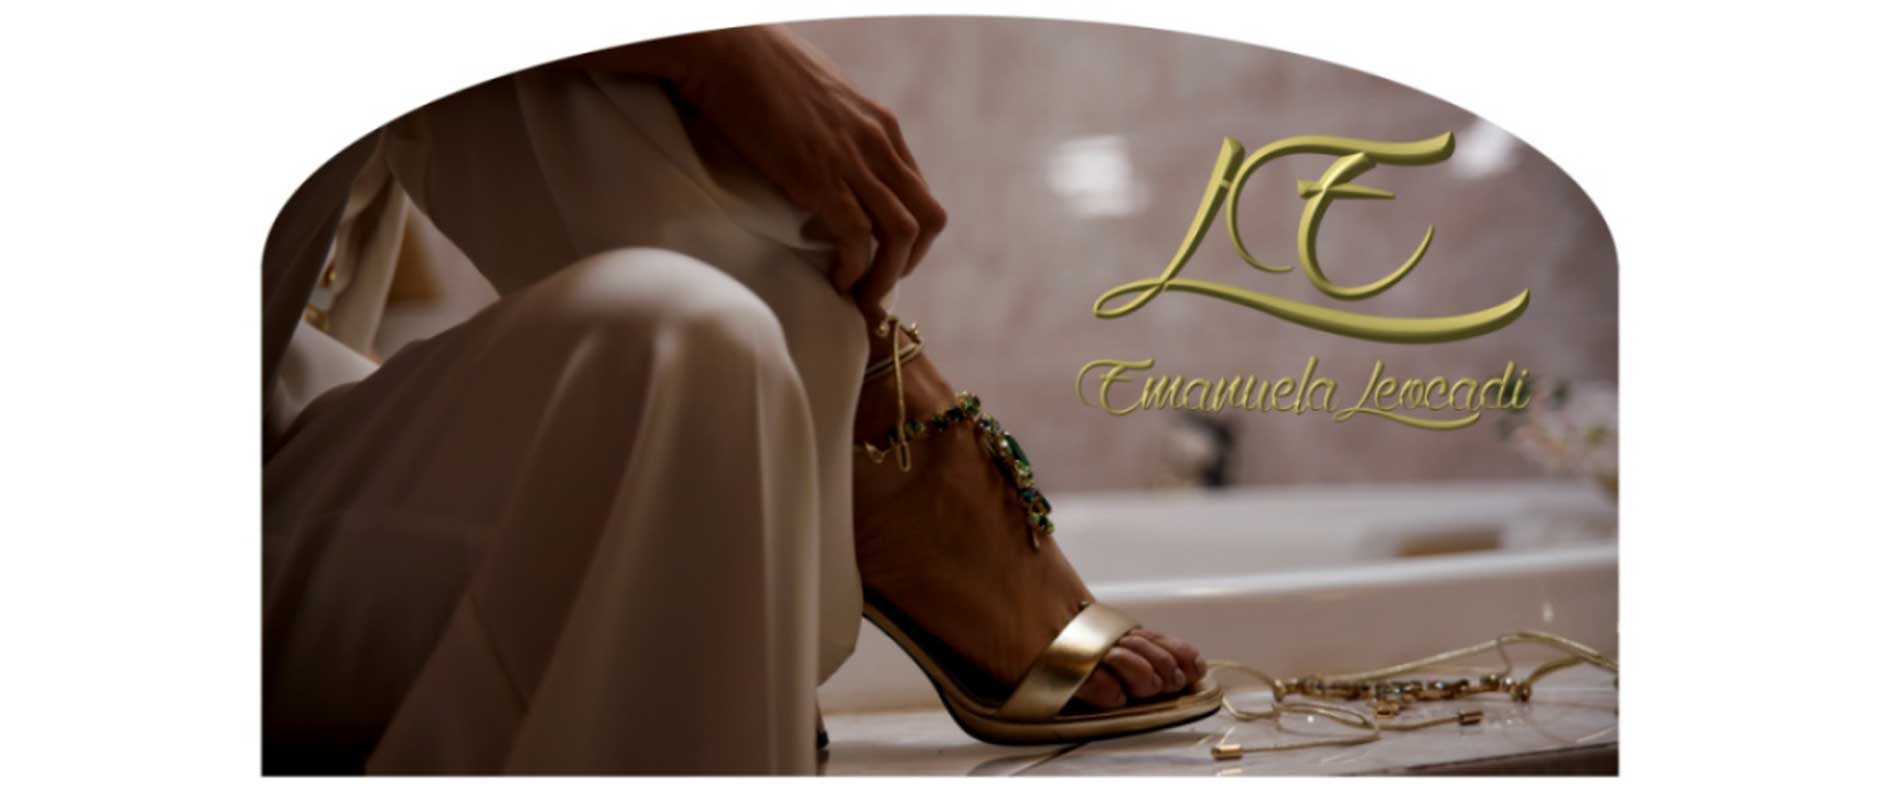 Leocadi Emanuela  Fashion accessories e bijoux 